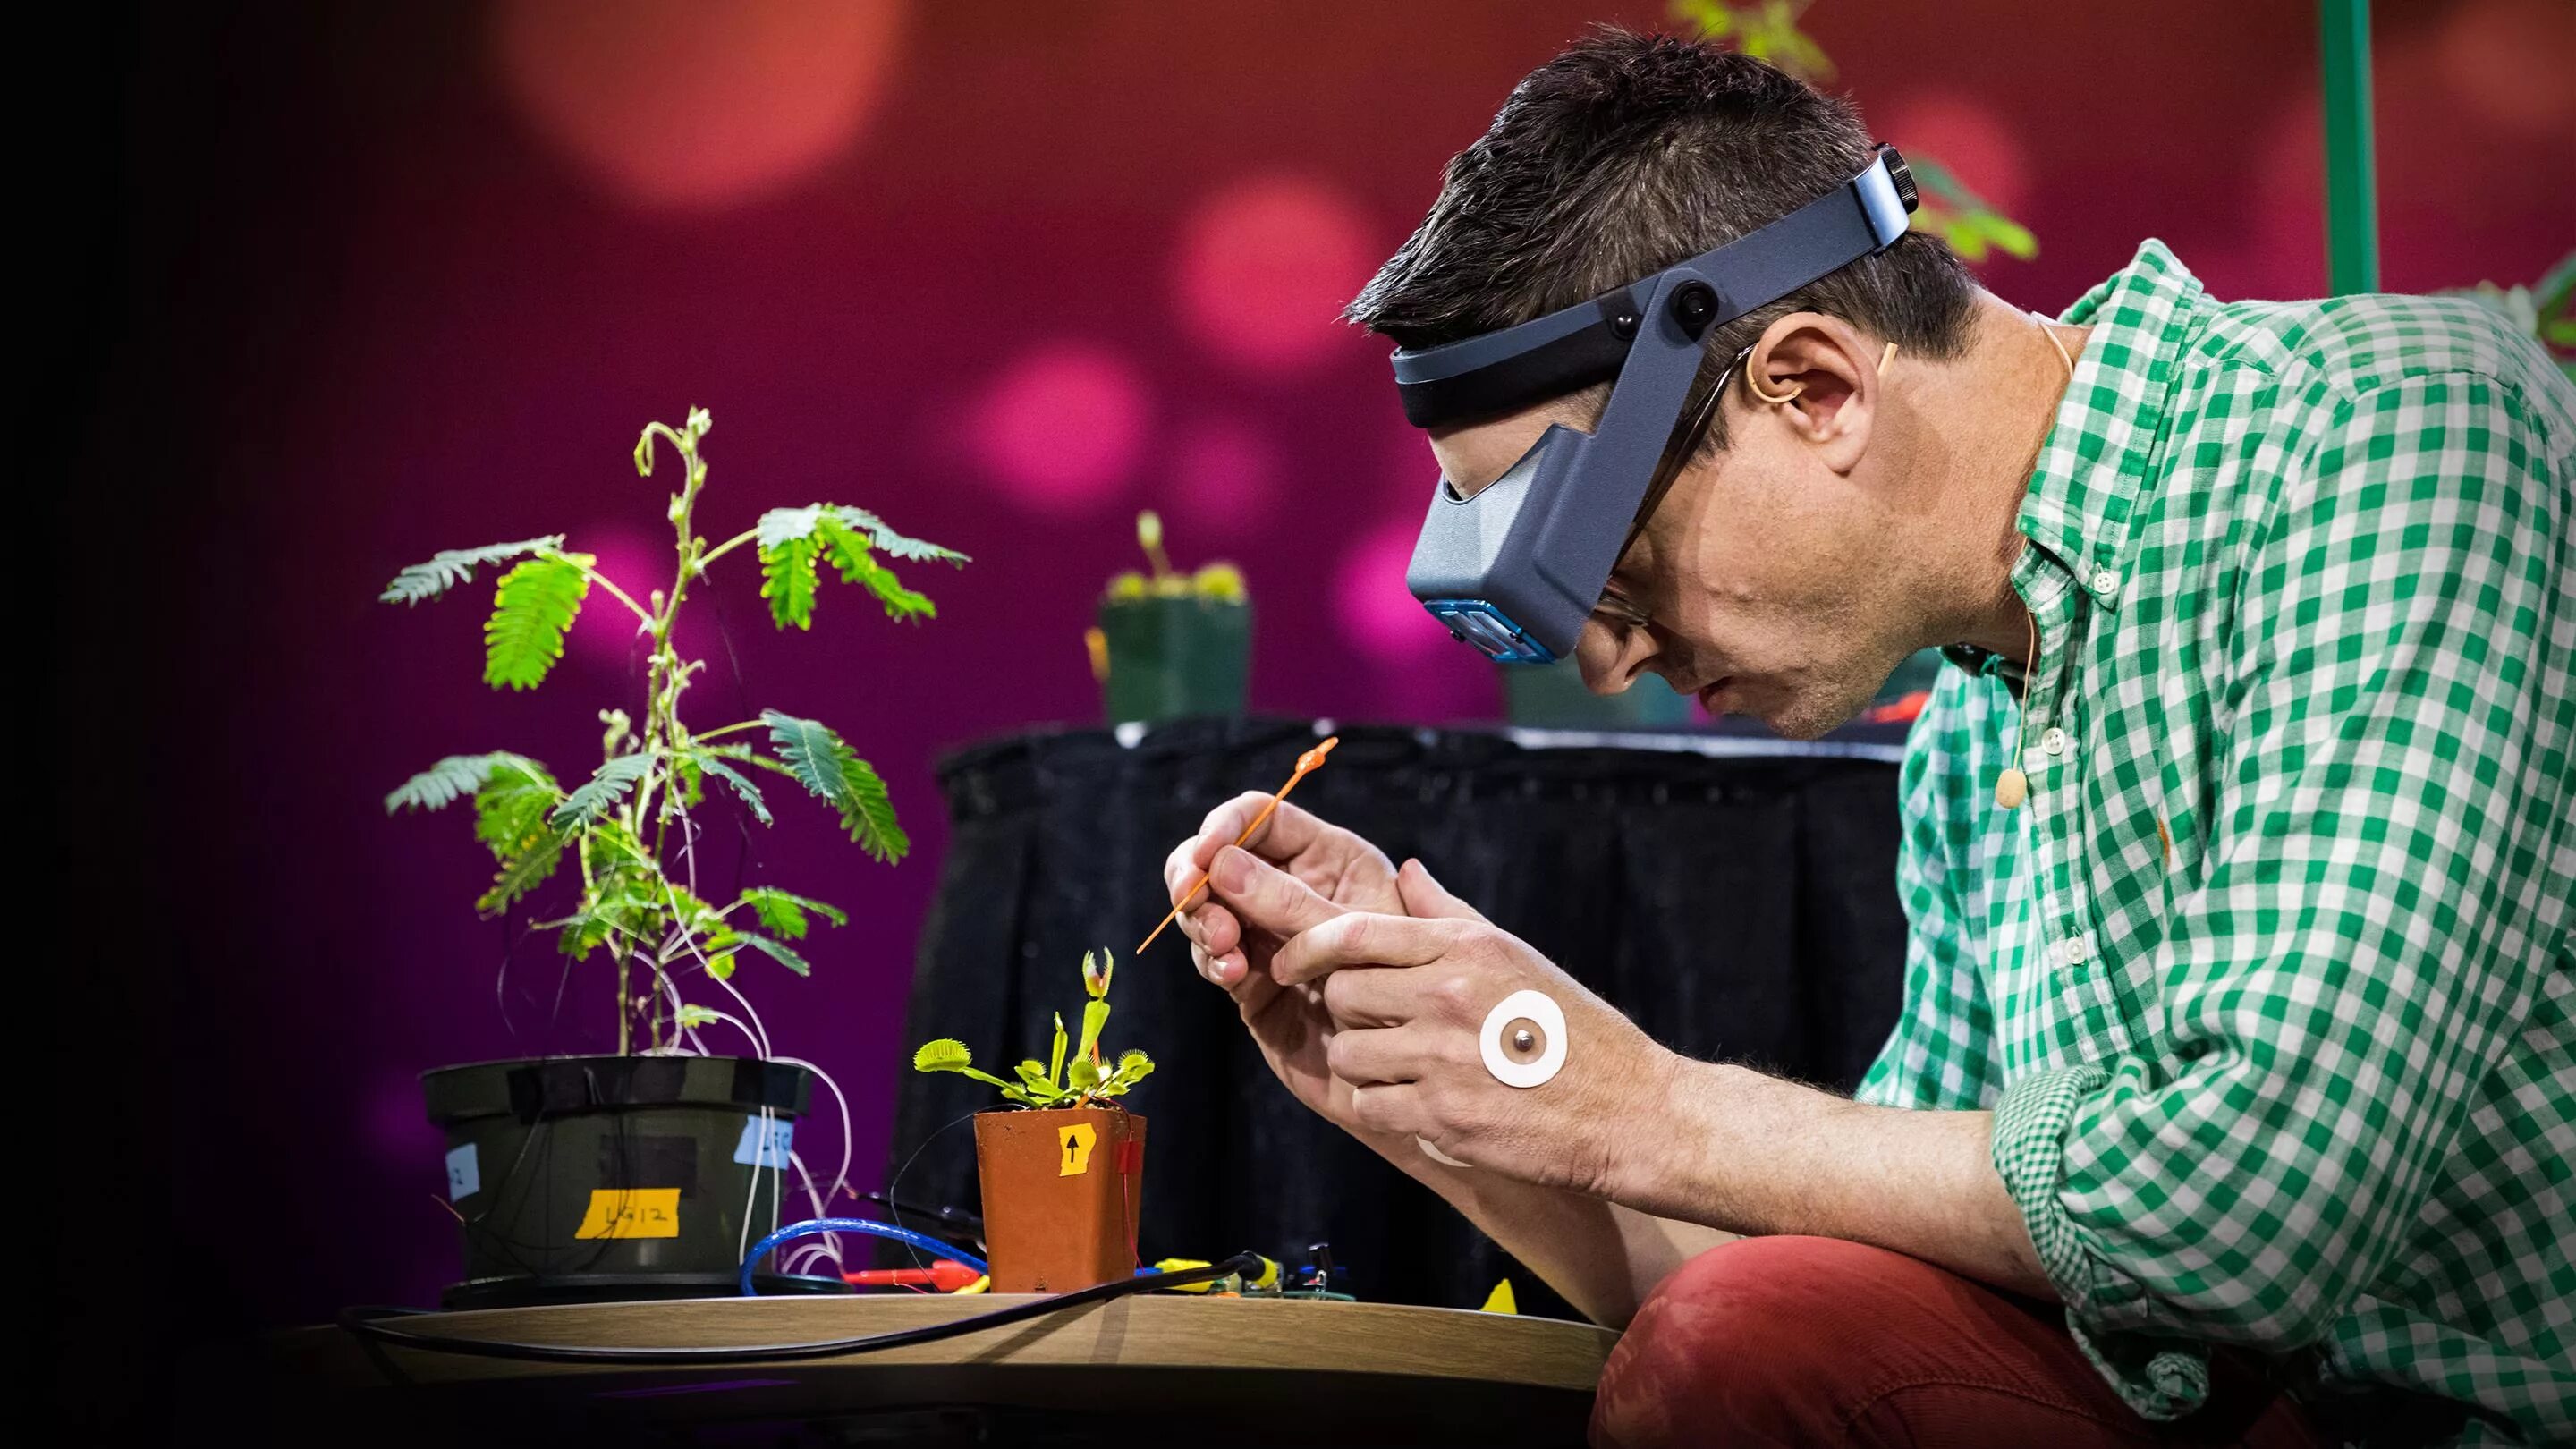 Эксперименты с растениями. Электричество в растениях. Растения и человек. Удивительные опыты с растениями. Земли следить за человеком